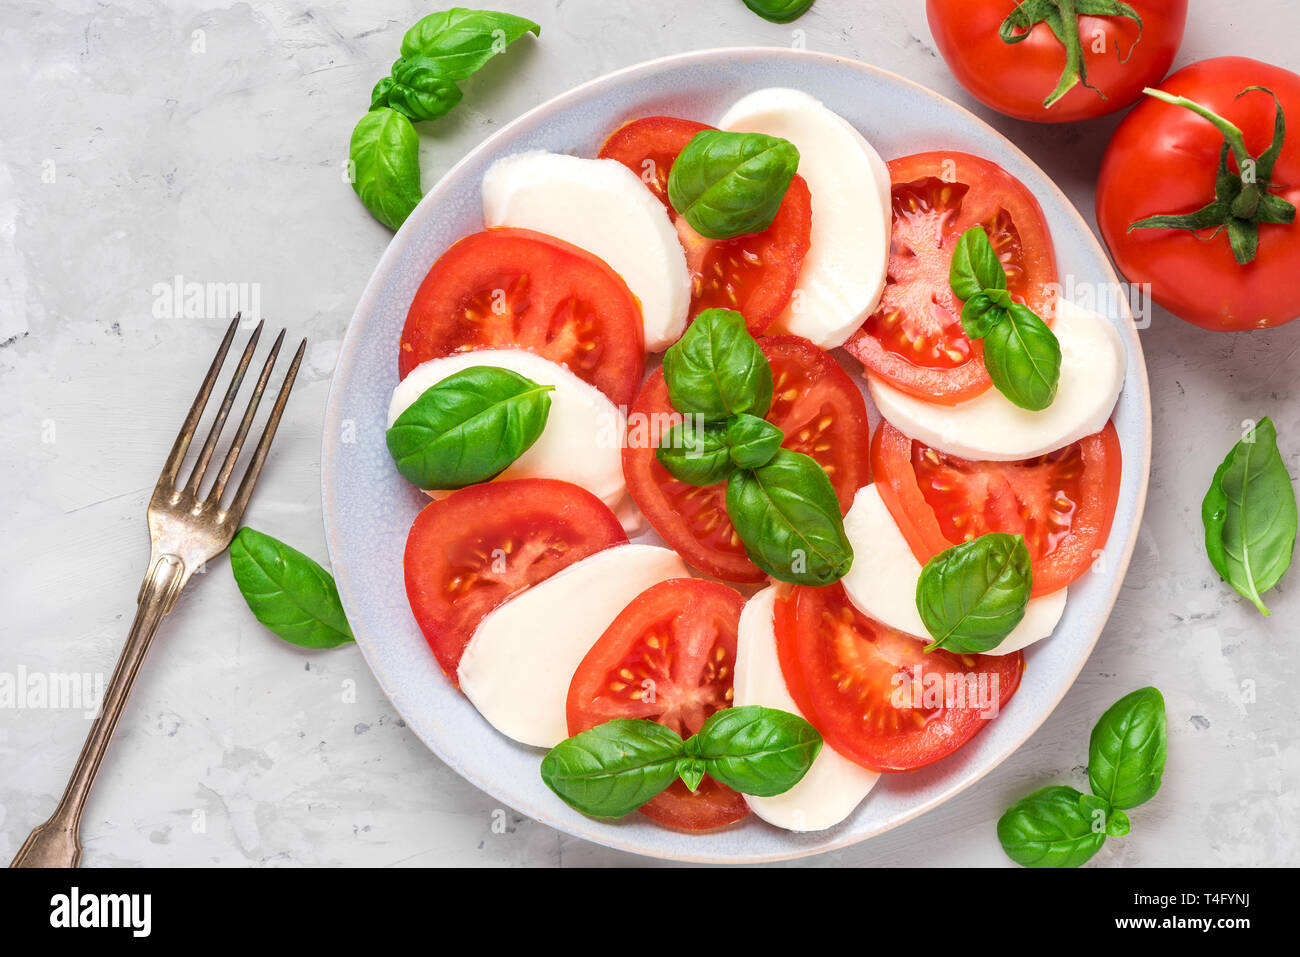 Frische italienische Caprese Salat mit in Scheiben geschnittenen Tomaten, Mozzarella, Basilikum, Olivenöl und Gabel in eine Platte auf grauem Beton Hintergrund. Flach. nach oben v Stockfoto